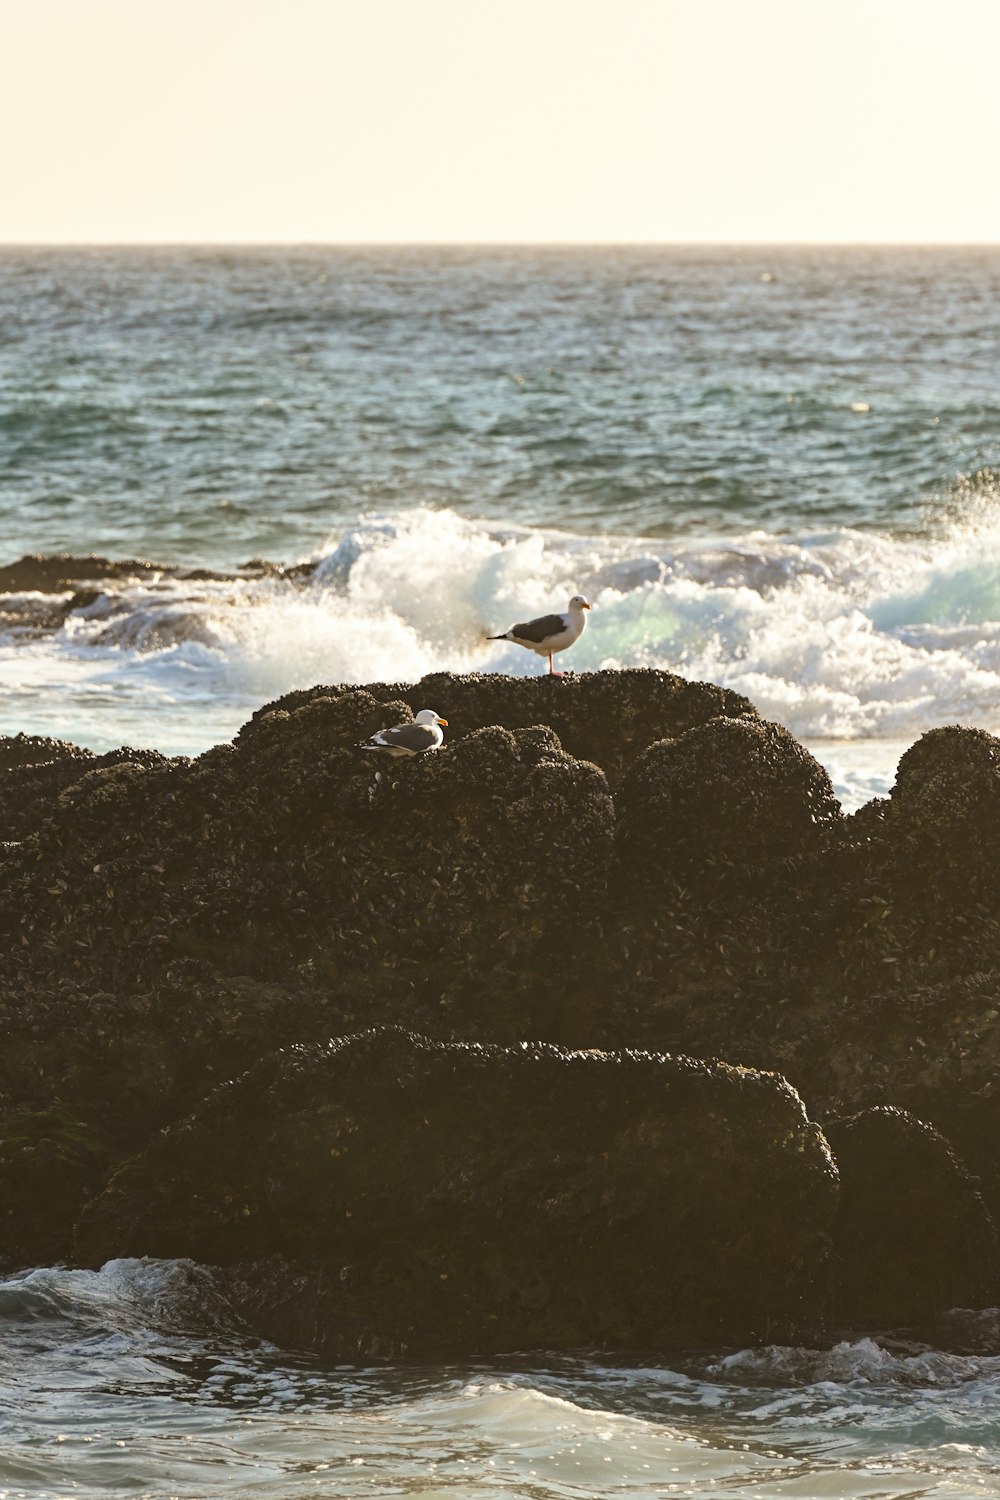 a bird standing on a rock near the ocean